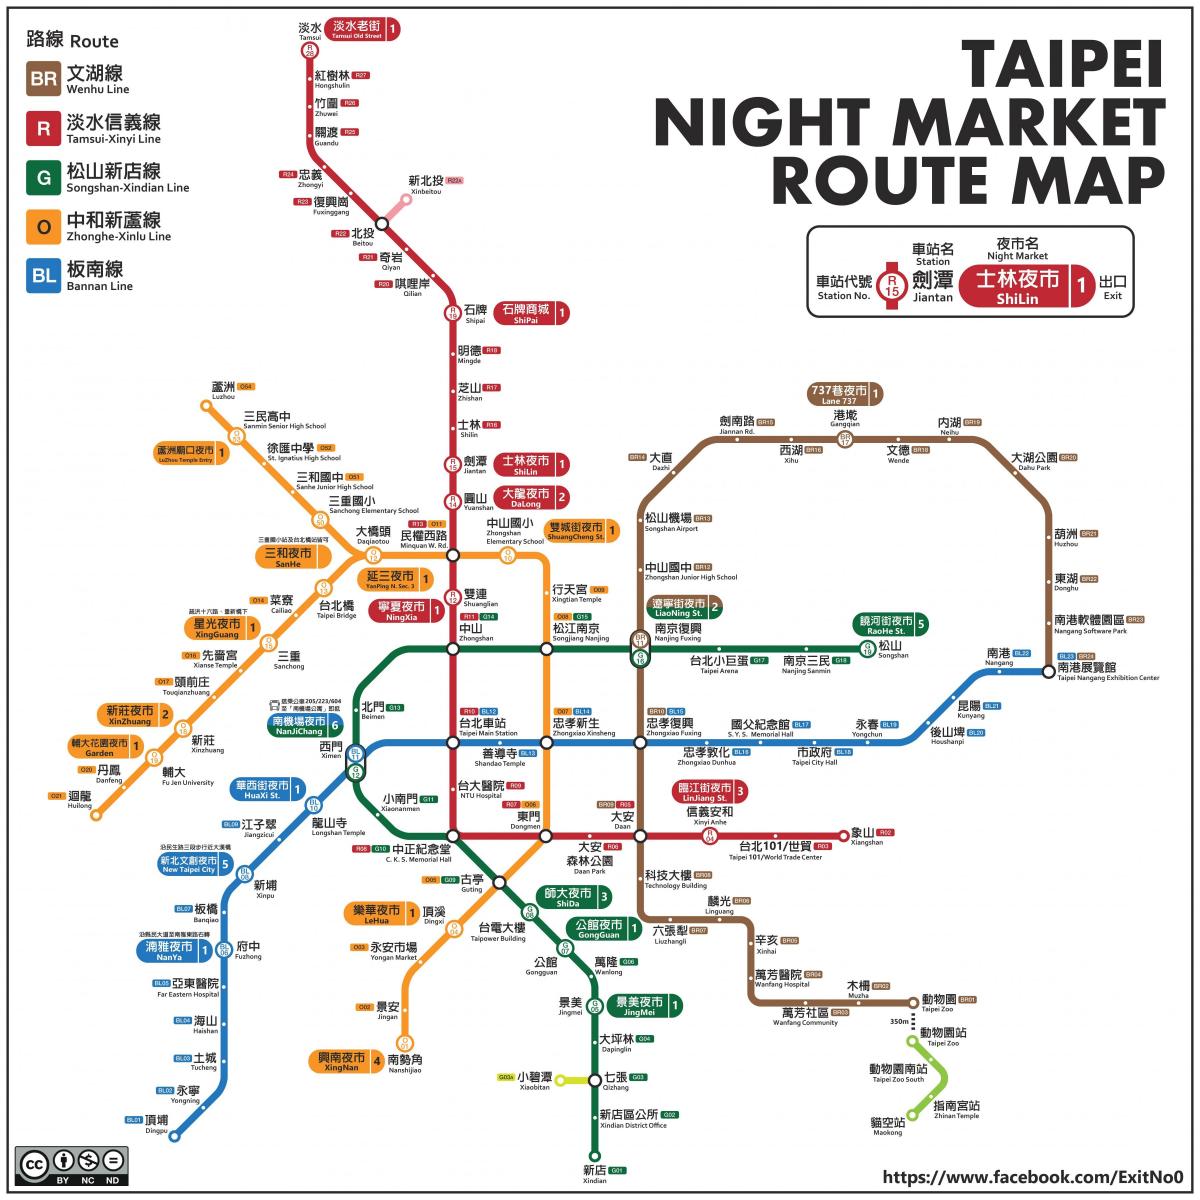 bản đồ của Đài bắc đêm thị trường